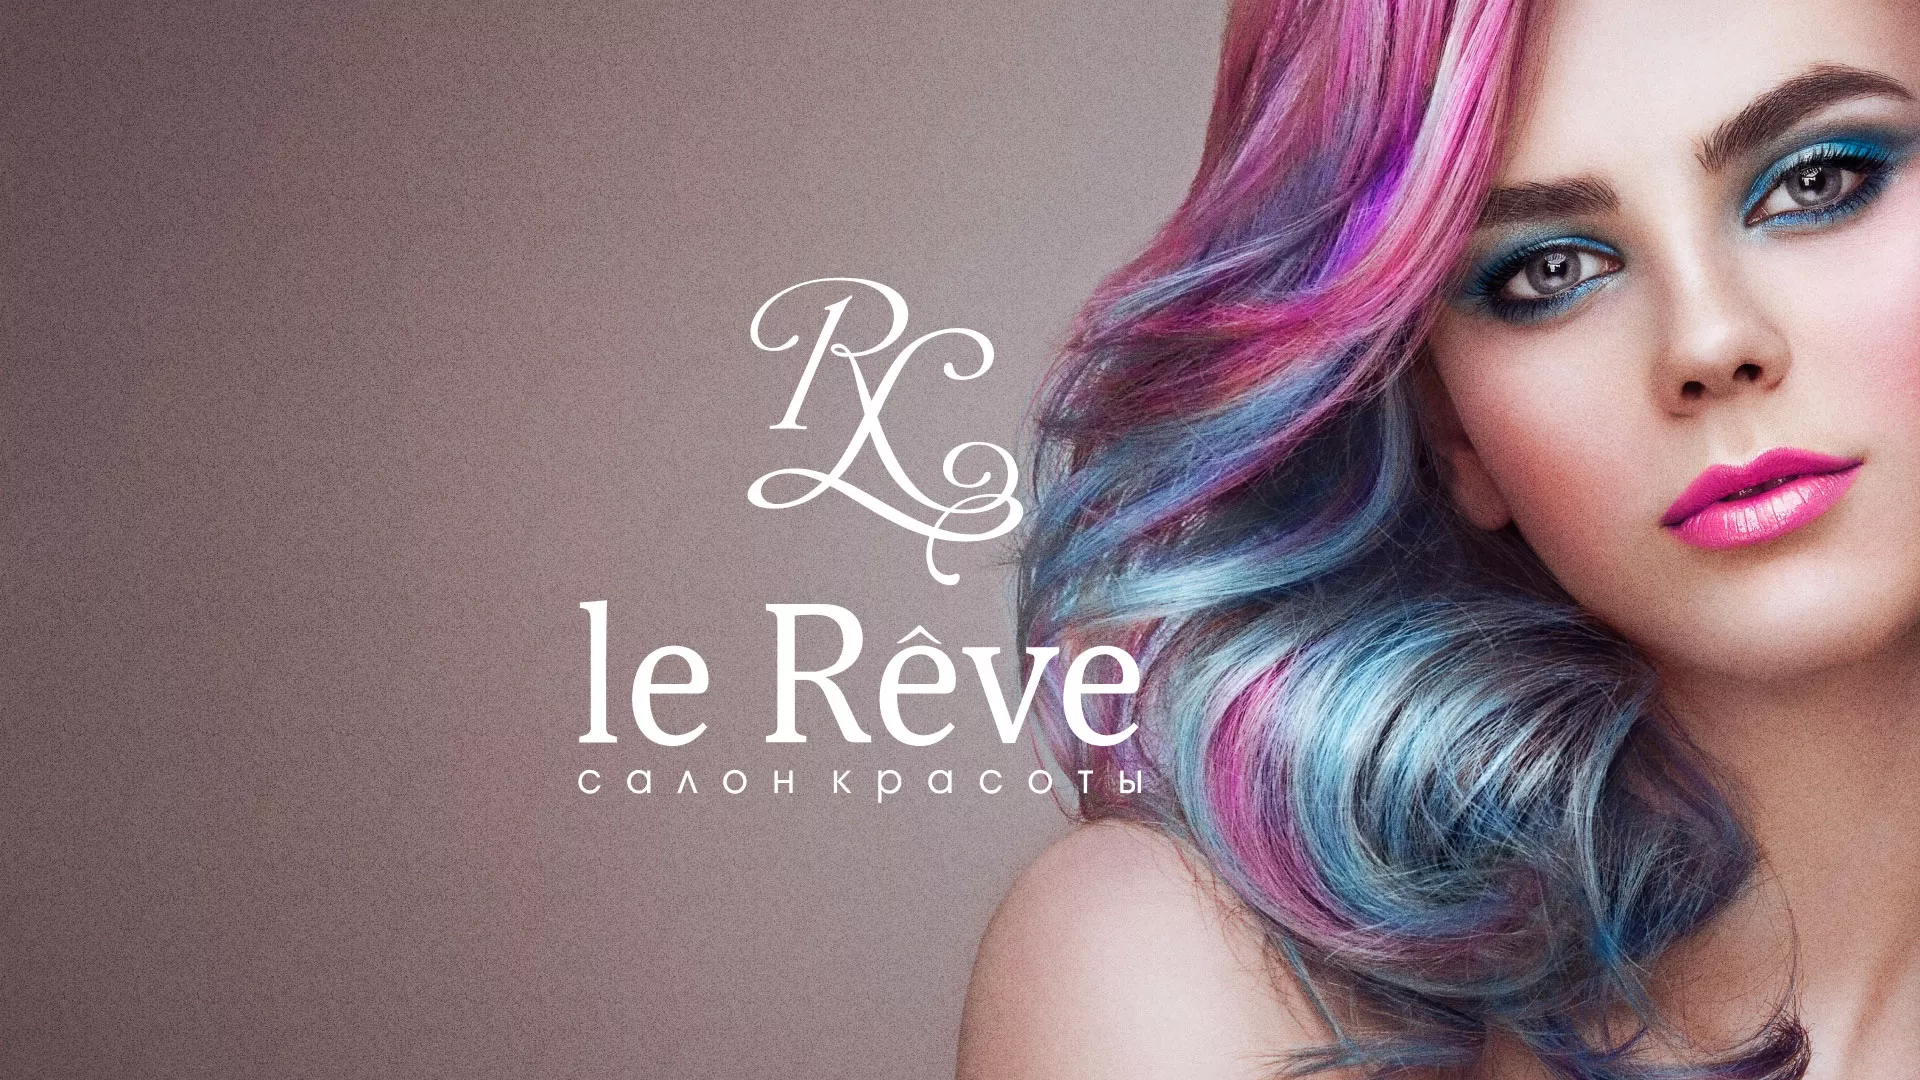 Создание сайта для салона красоты «Le Reve» в Малоярославце